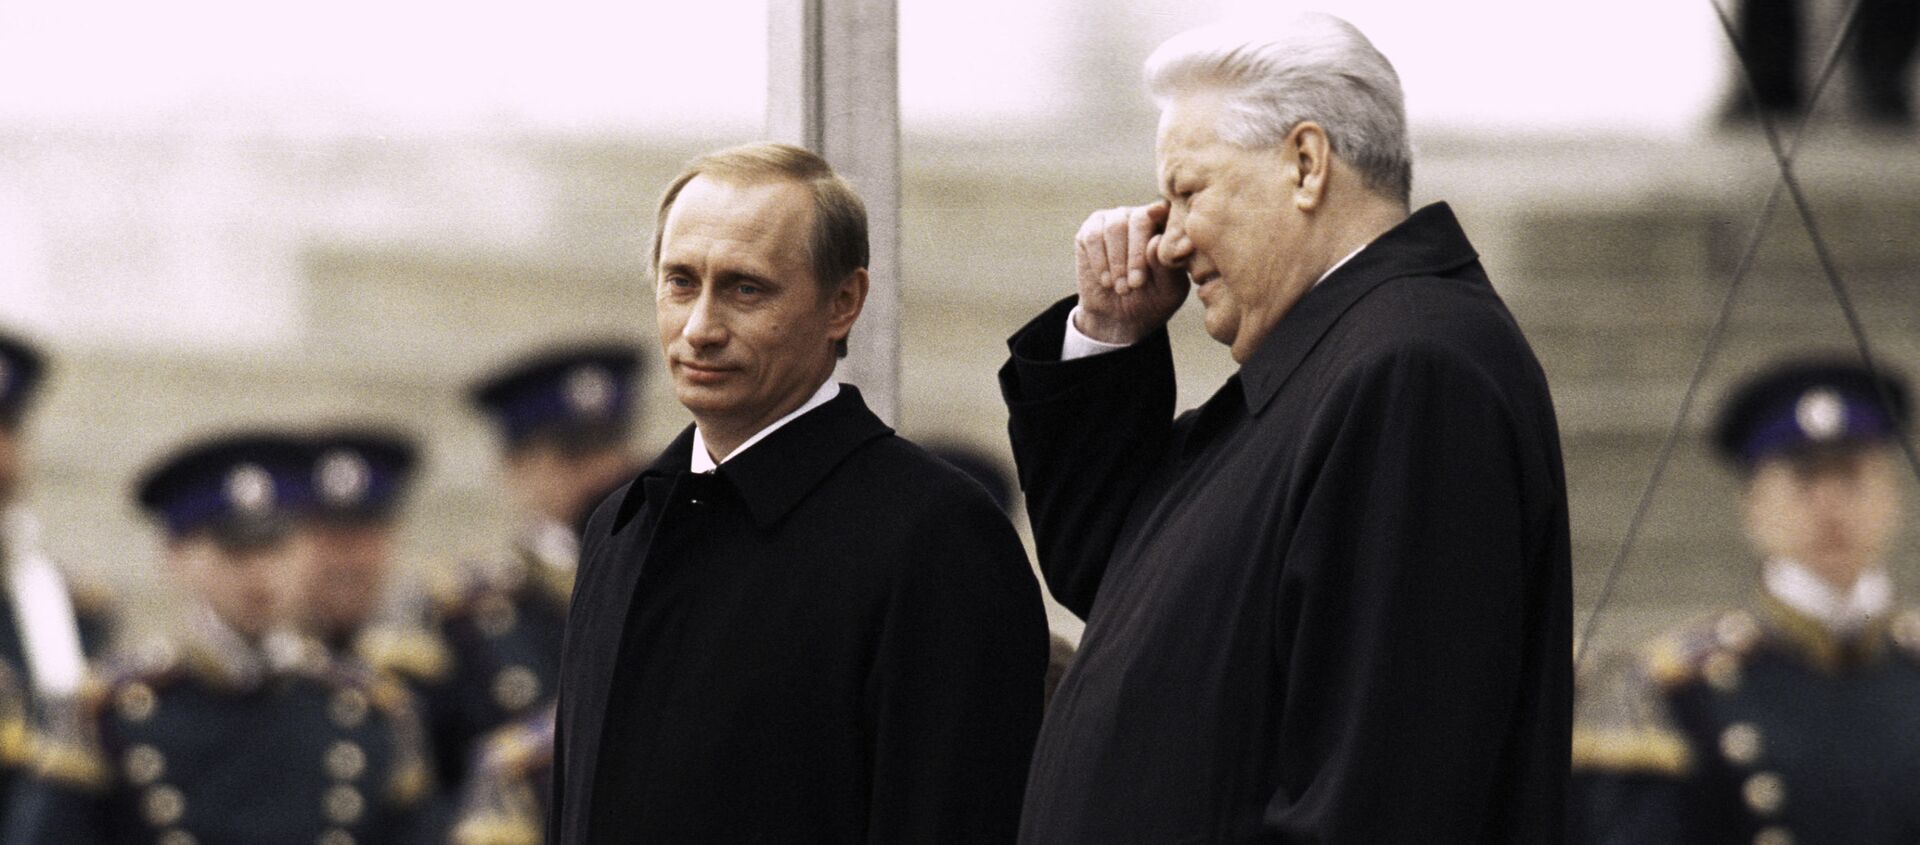 Tổng thống đầu tiên của LB Nga Boris Yeltsin và Tổng thống LB Nga Vladimir Putin vào ngày nhậm chức của Vladimir Putin năm 2000 - Sputnik Việt Nam, 1920, 07.08.2020